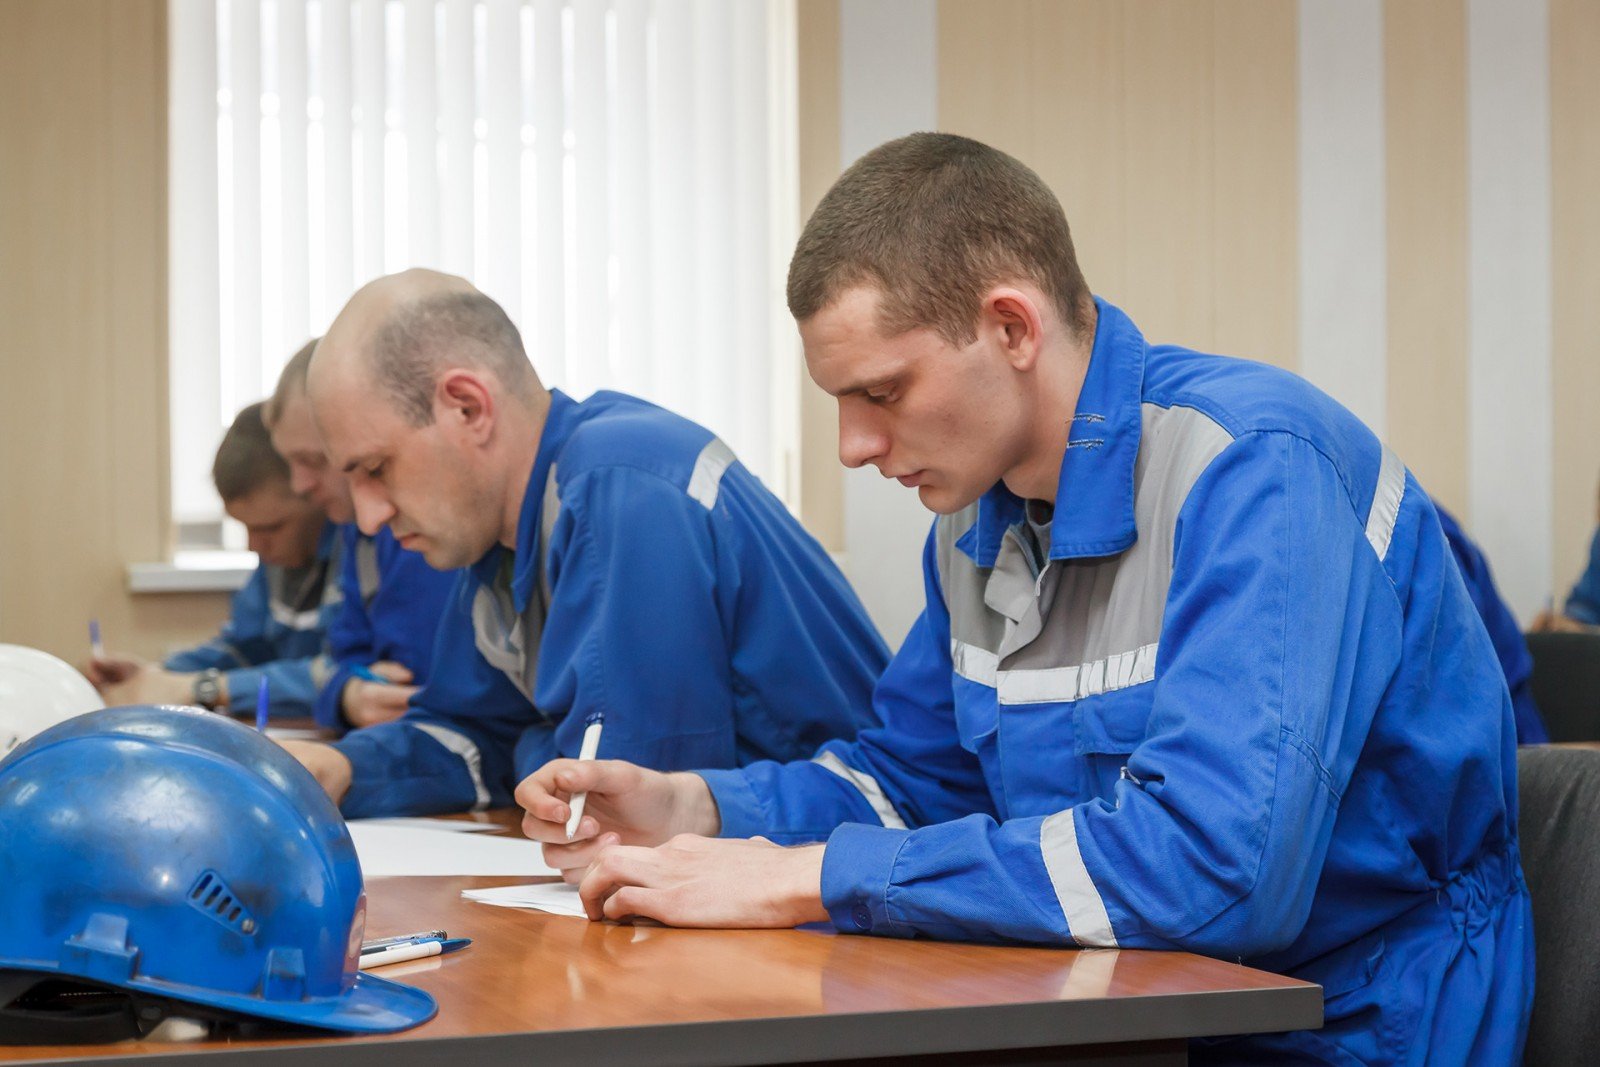 Почти 90% сотрудников Алтай-Кокса приняли участие в образовательных программах предприятия